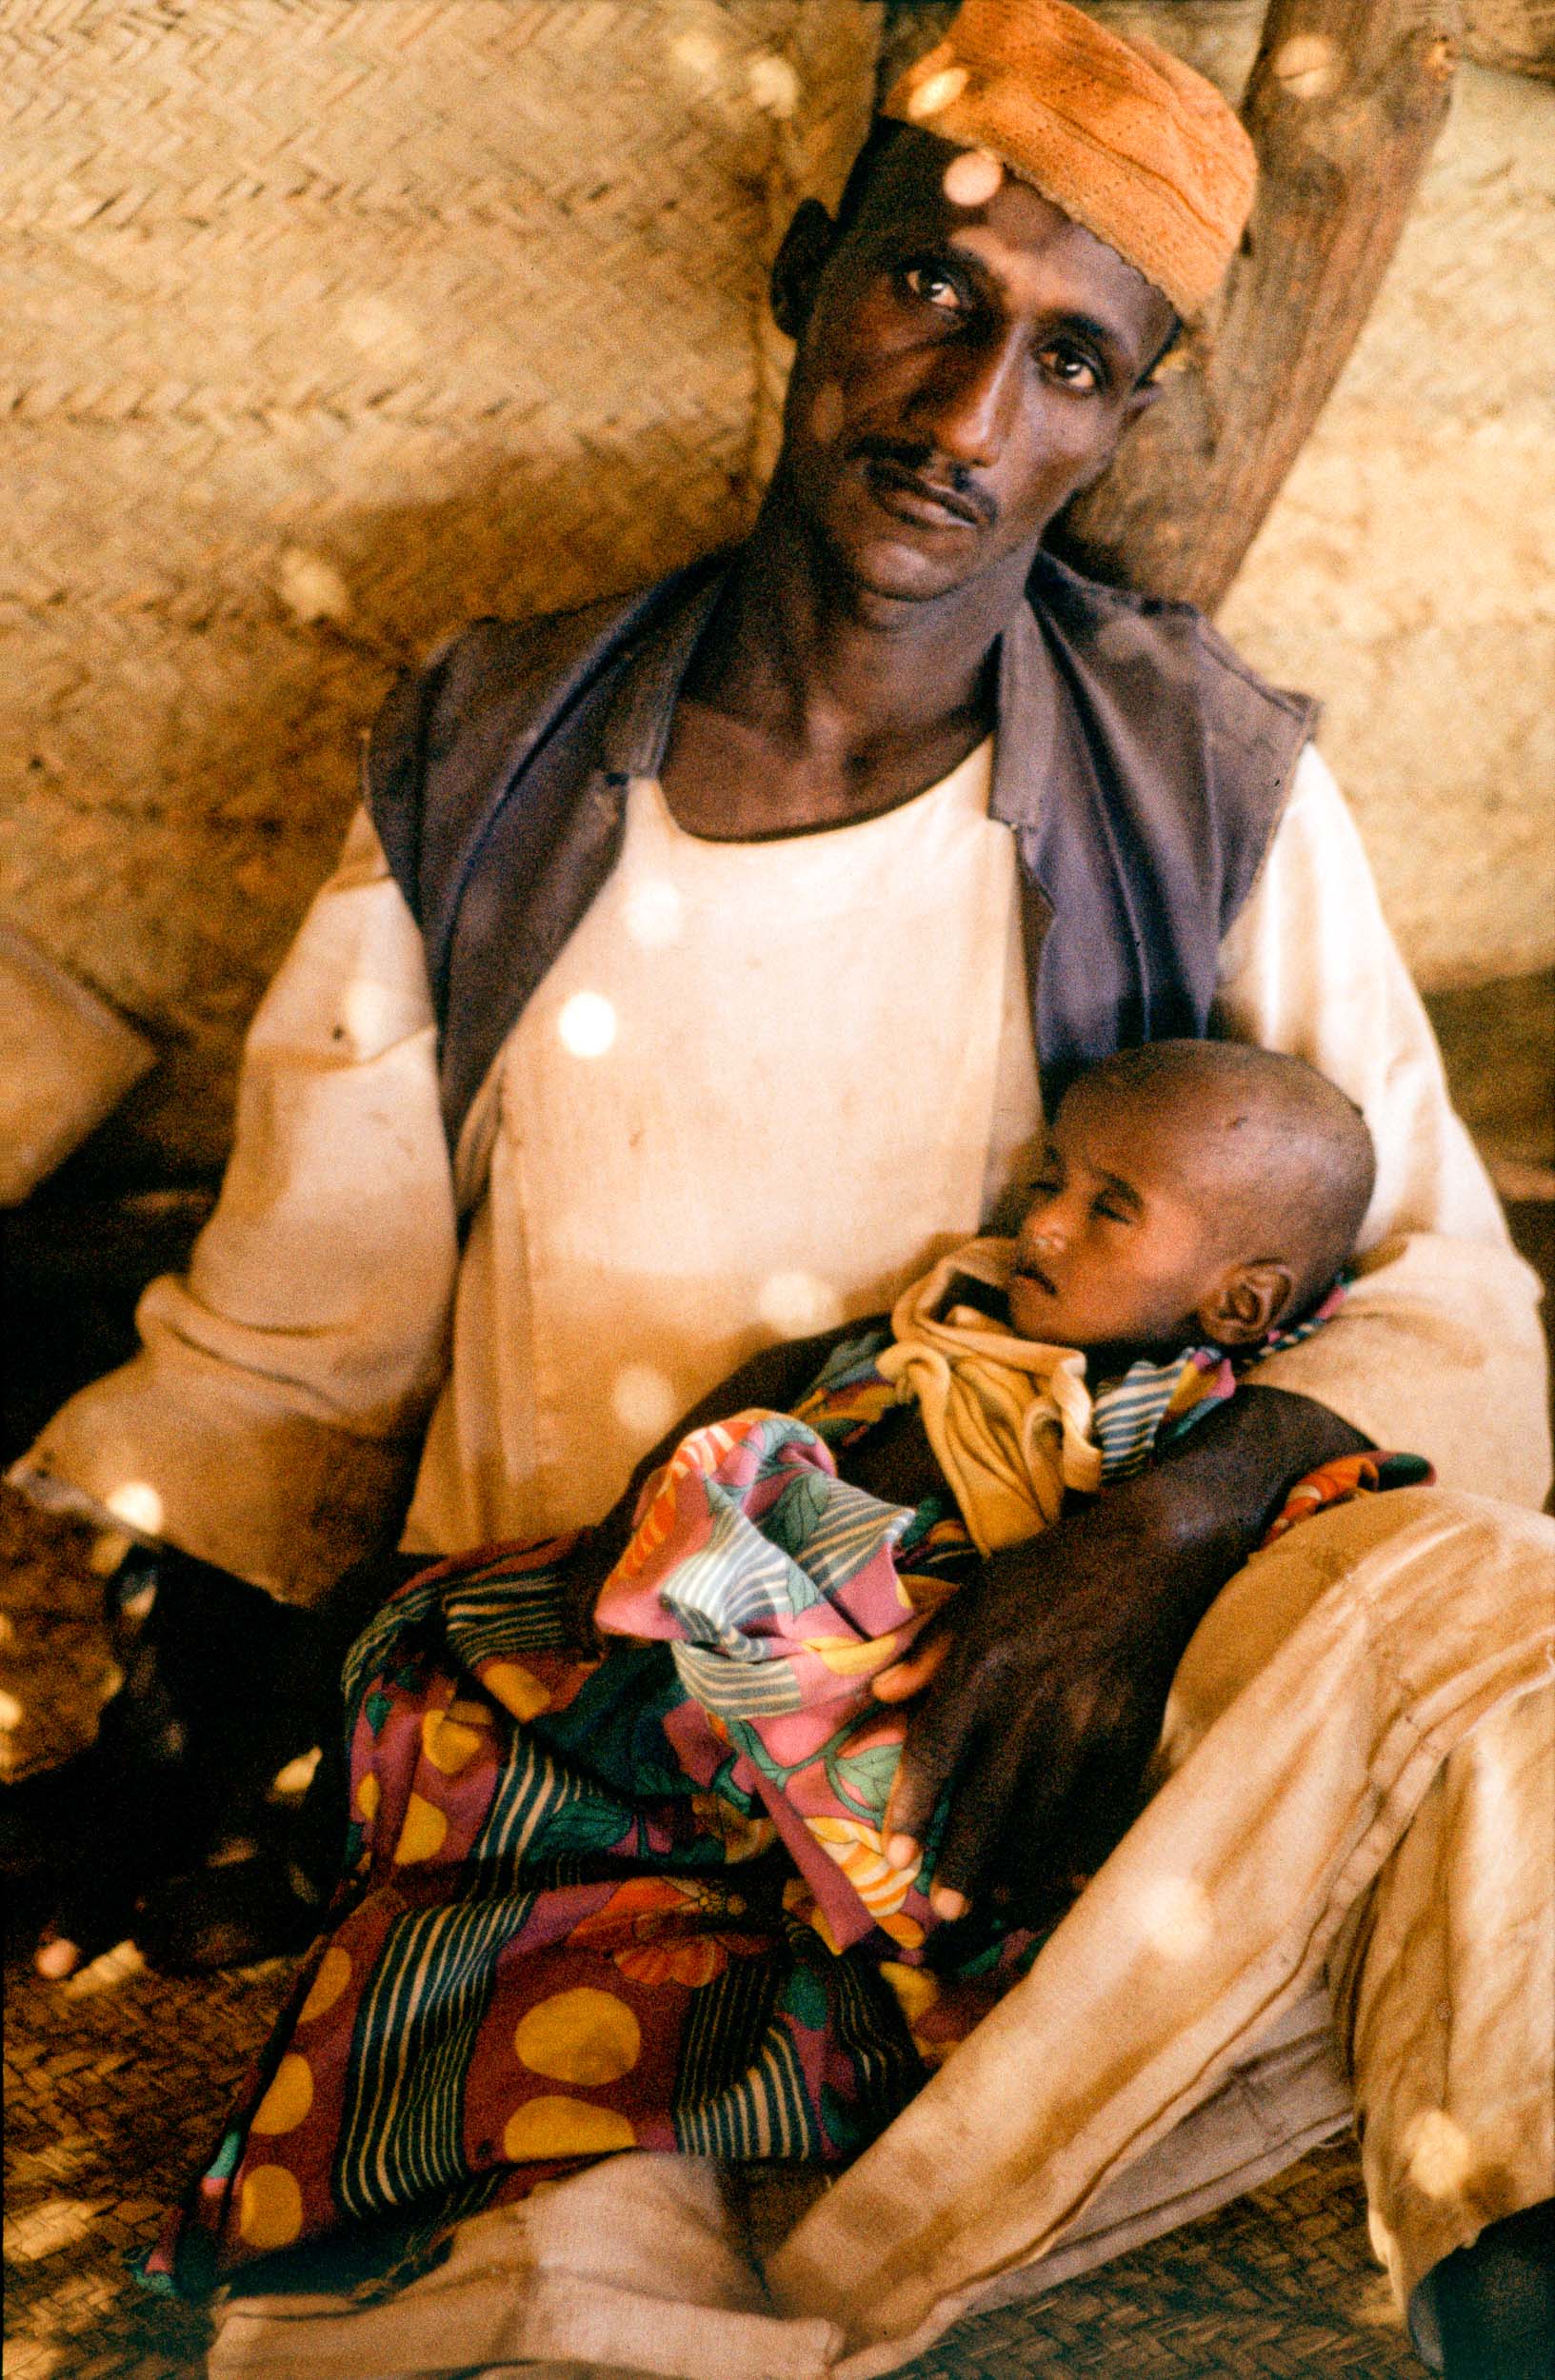 Face of Famine, Ethiopia